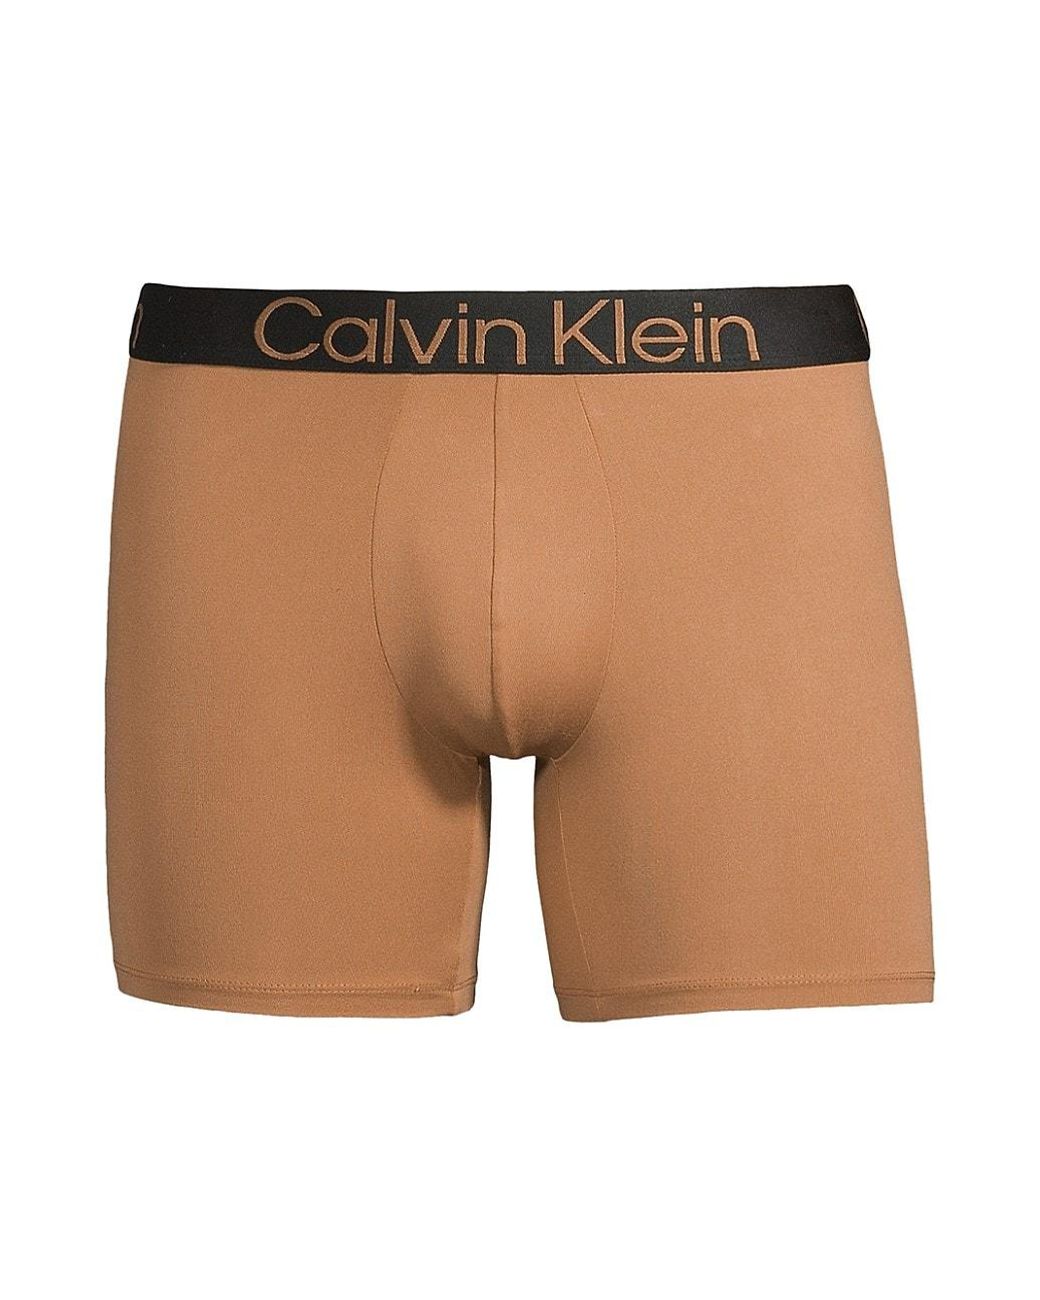 Calvin Klein Logo Stretch Boxer Briefs for Men | Lyst